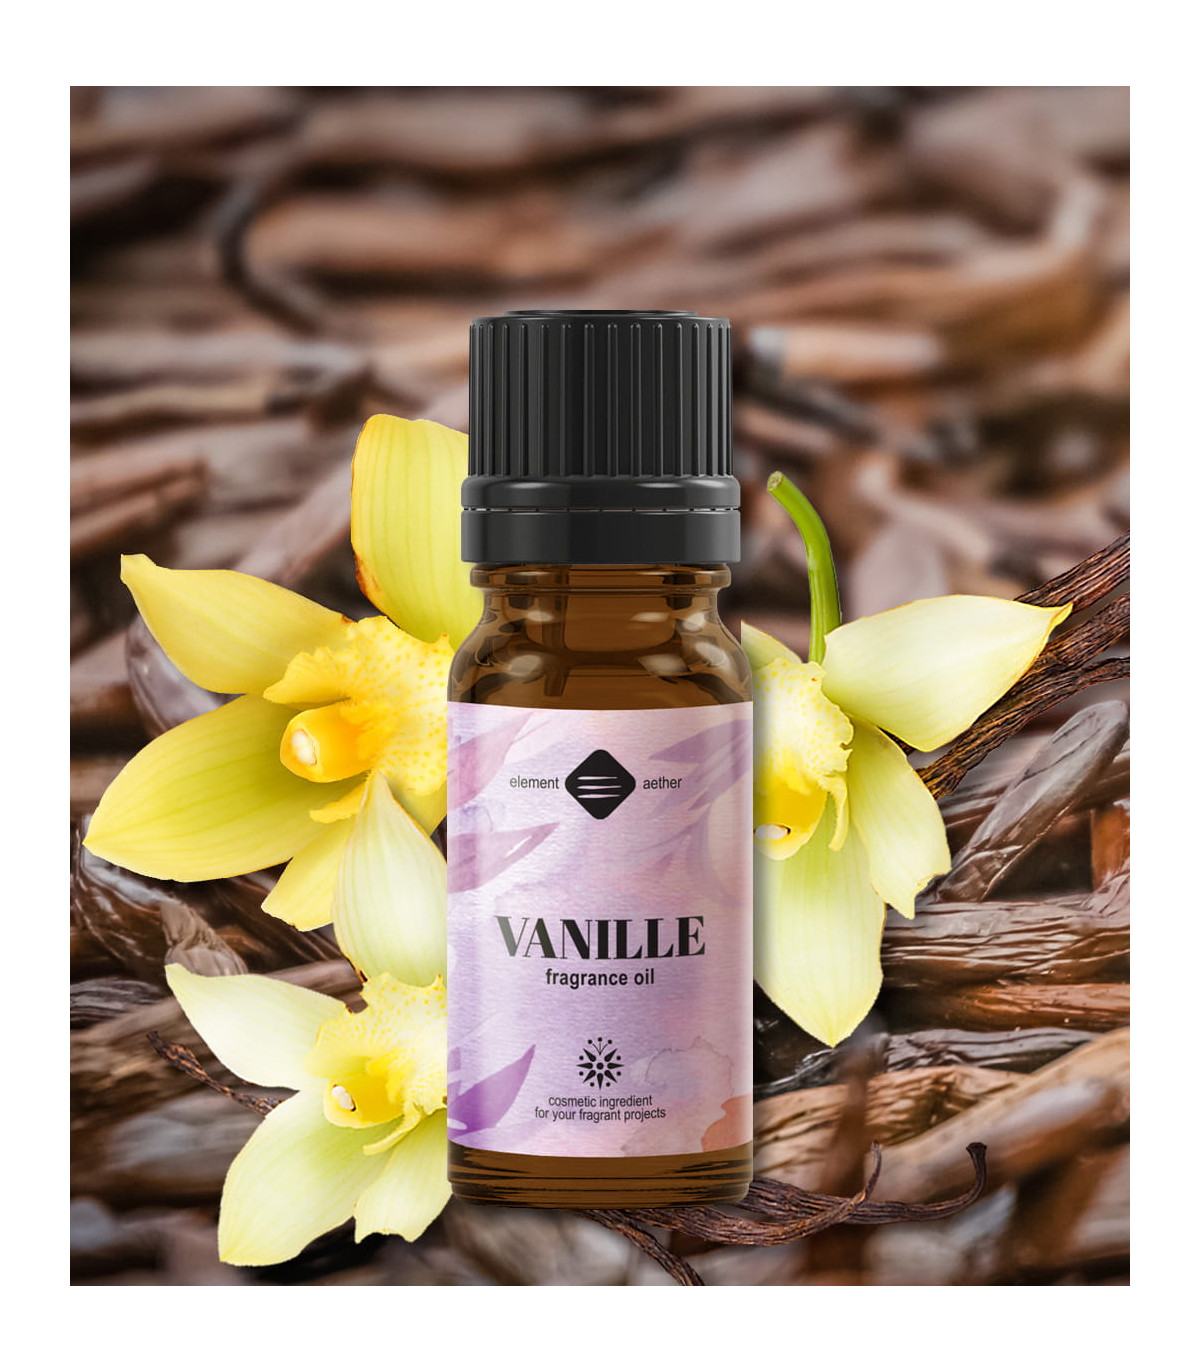 Vanille Fragrance oil